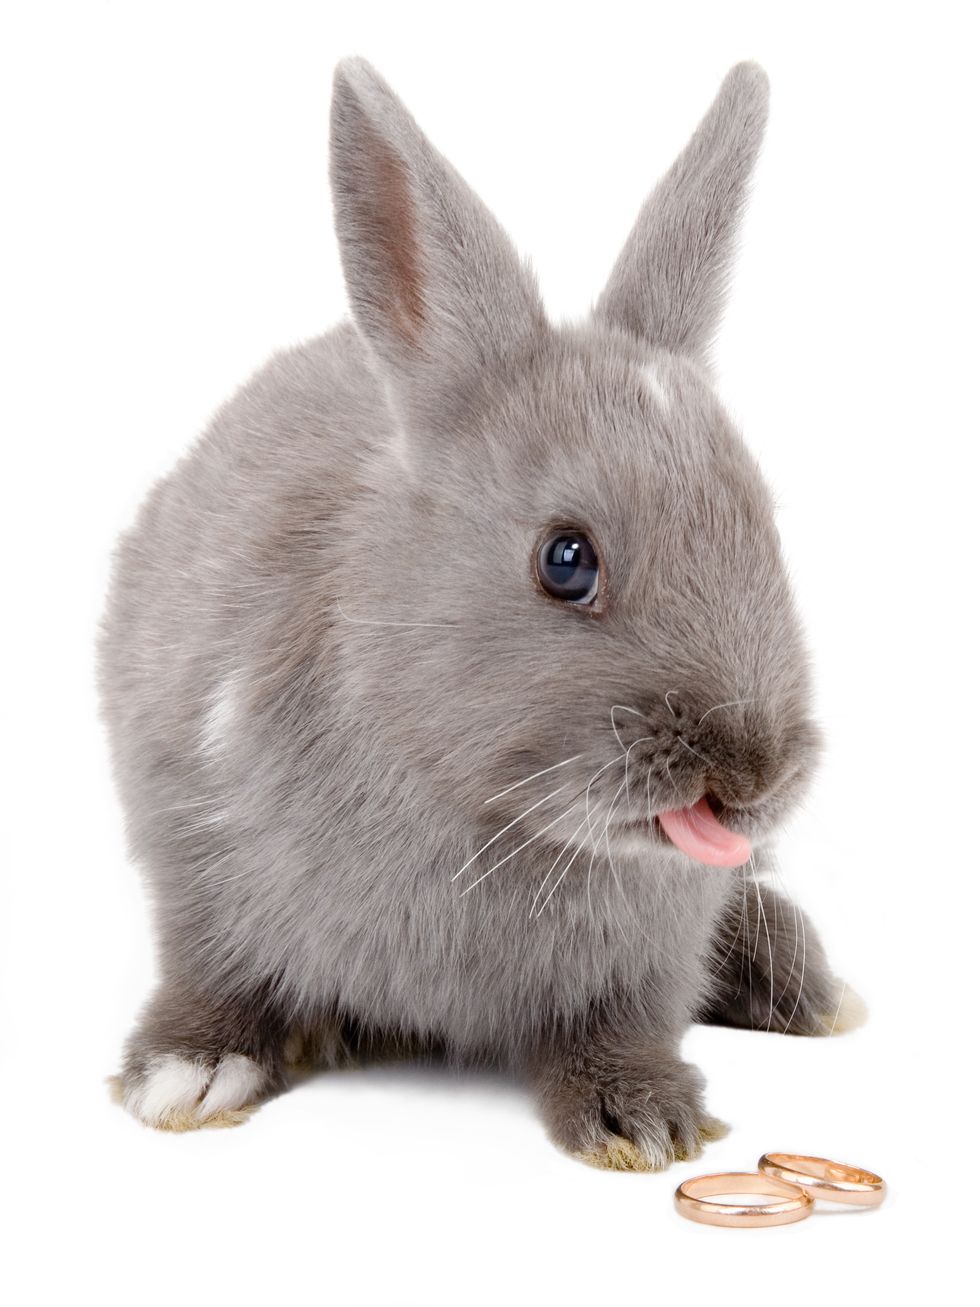 小紅書,口紅,兔子舌頭,兔兔舌,唇彩,唇色,色號,兔兔,兔子,粉嫩色,粉色,淺色,珊瑚粉,粉紅,桃紅,兔兔舌頭,純欲兔兔舌